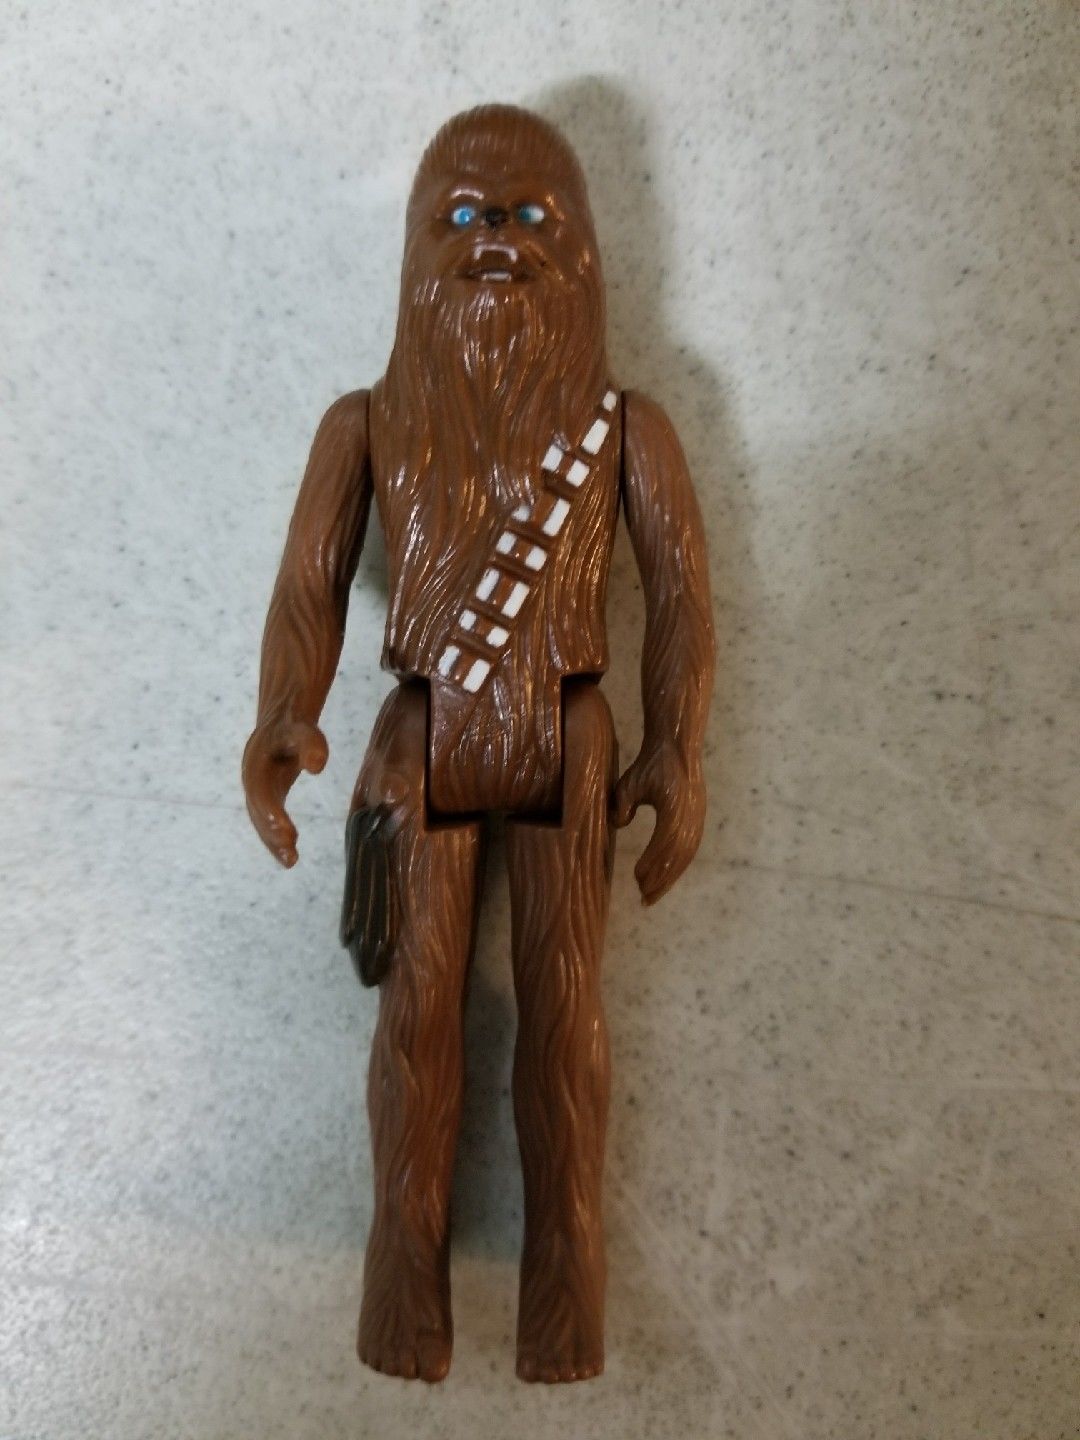 chewbacca figure 1977